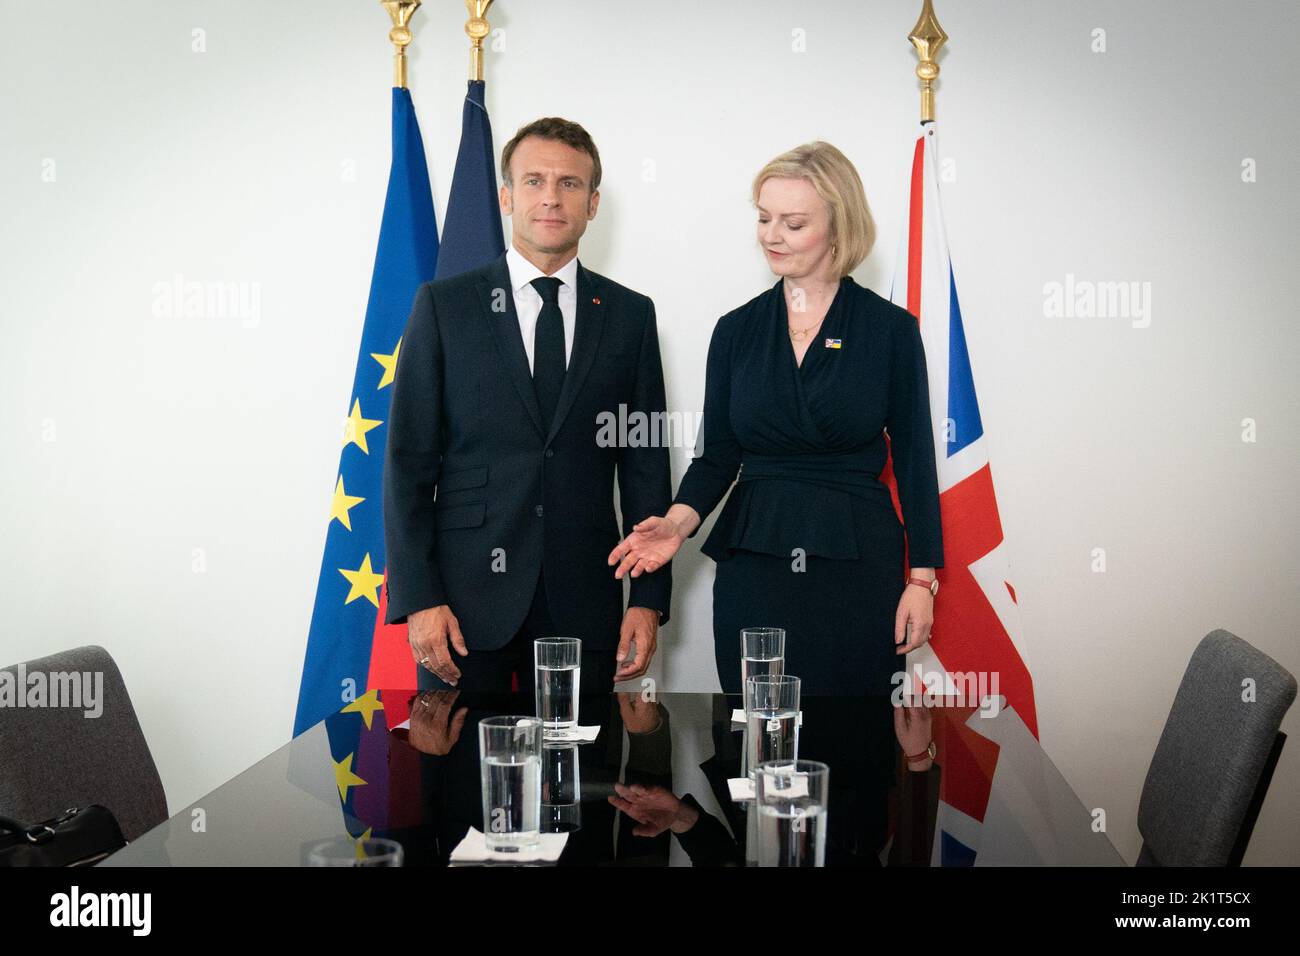 La primera ministra Liz Truss celebra una reunión bilateral con el presidente francés Emmanuel Macron durante su visita a Estados Unidos para asistir a la Asamblea General de las Naciones Unidas de 77th en Nueva York. Fecha de la foto: Martes 20 de septiembre de 2022. Foto de stock